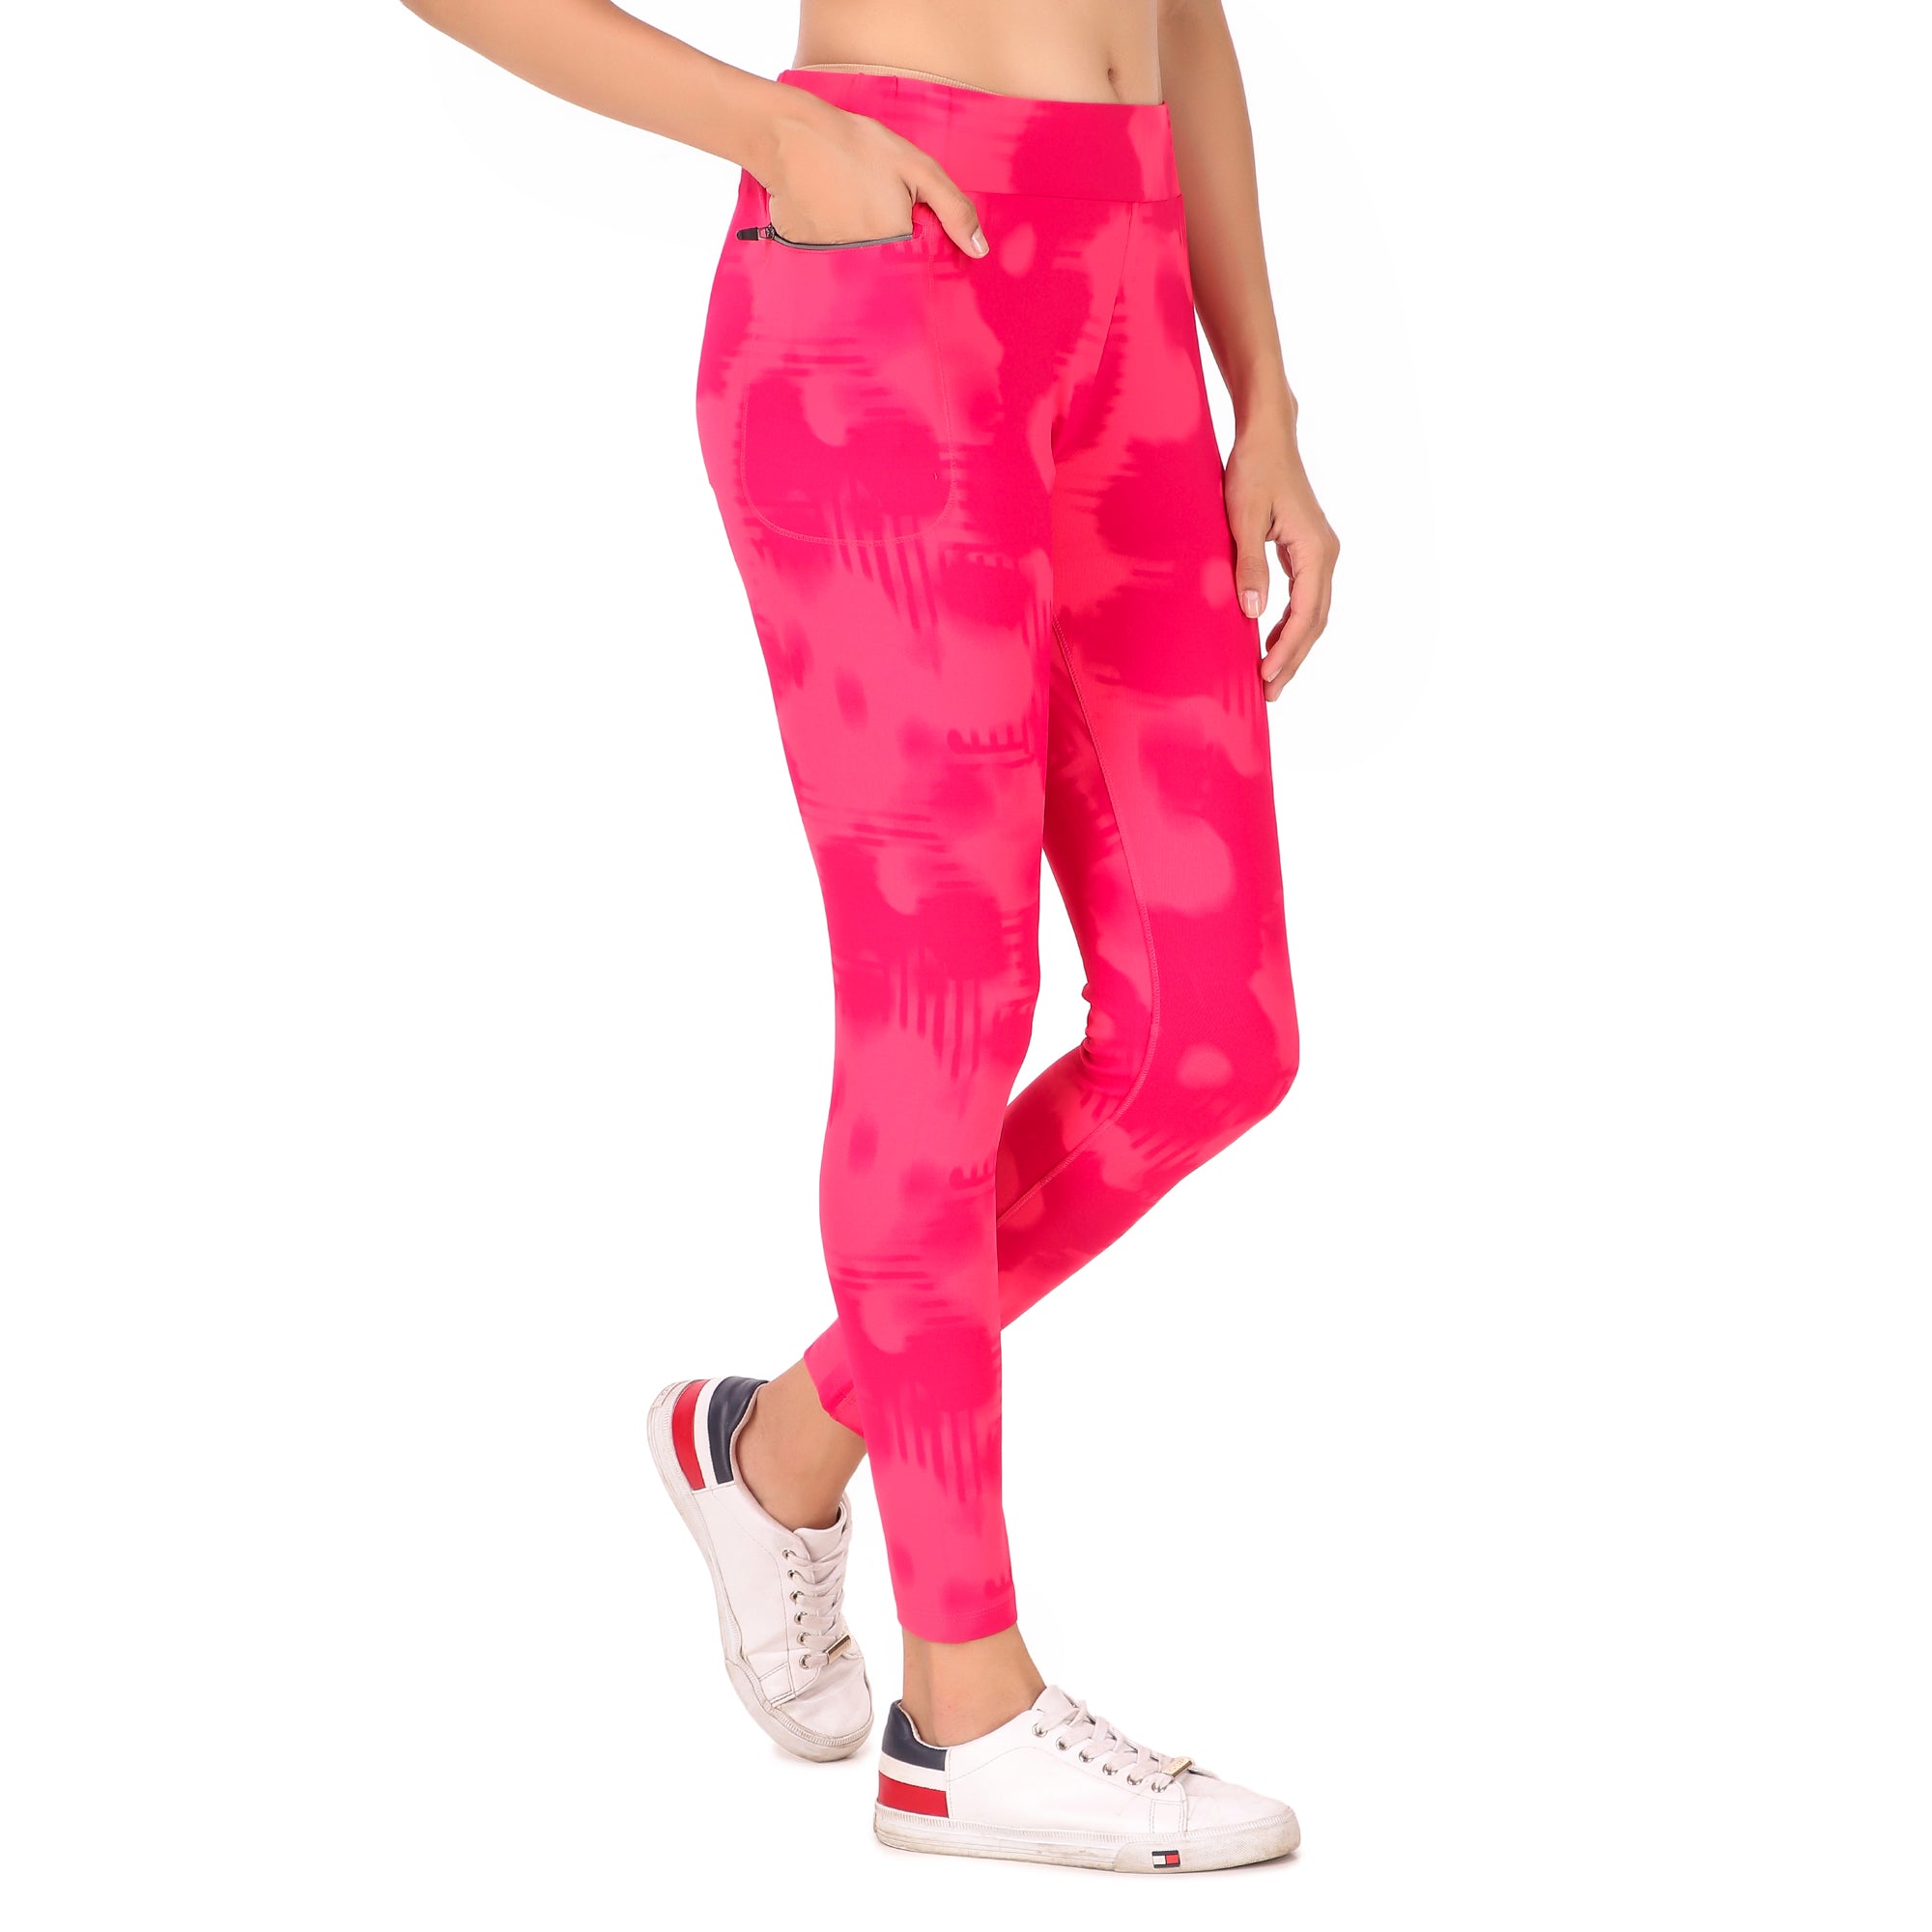 Gym Yoga Running Legging For Women Zip Pocket (Pink)